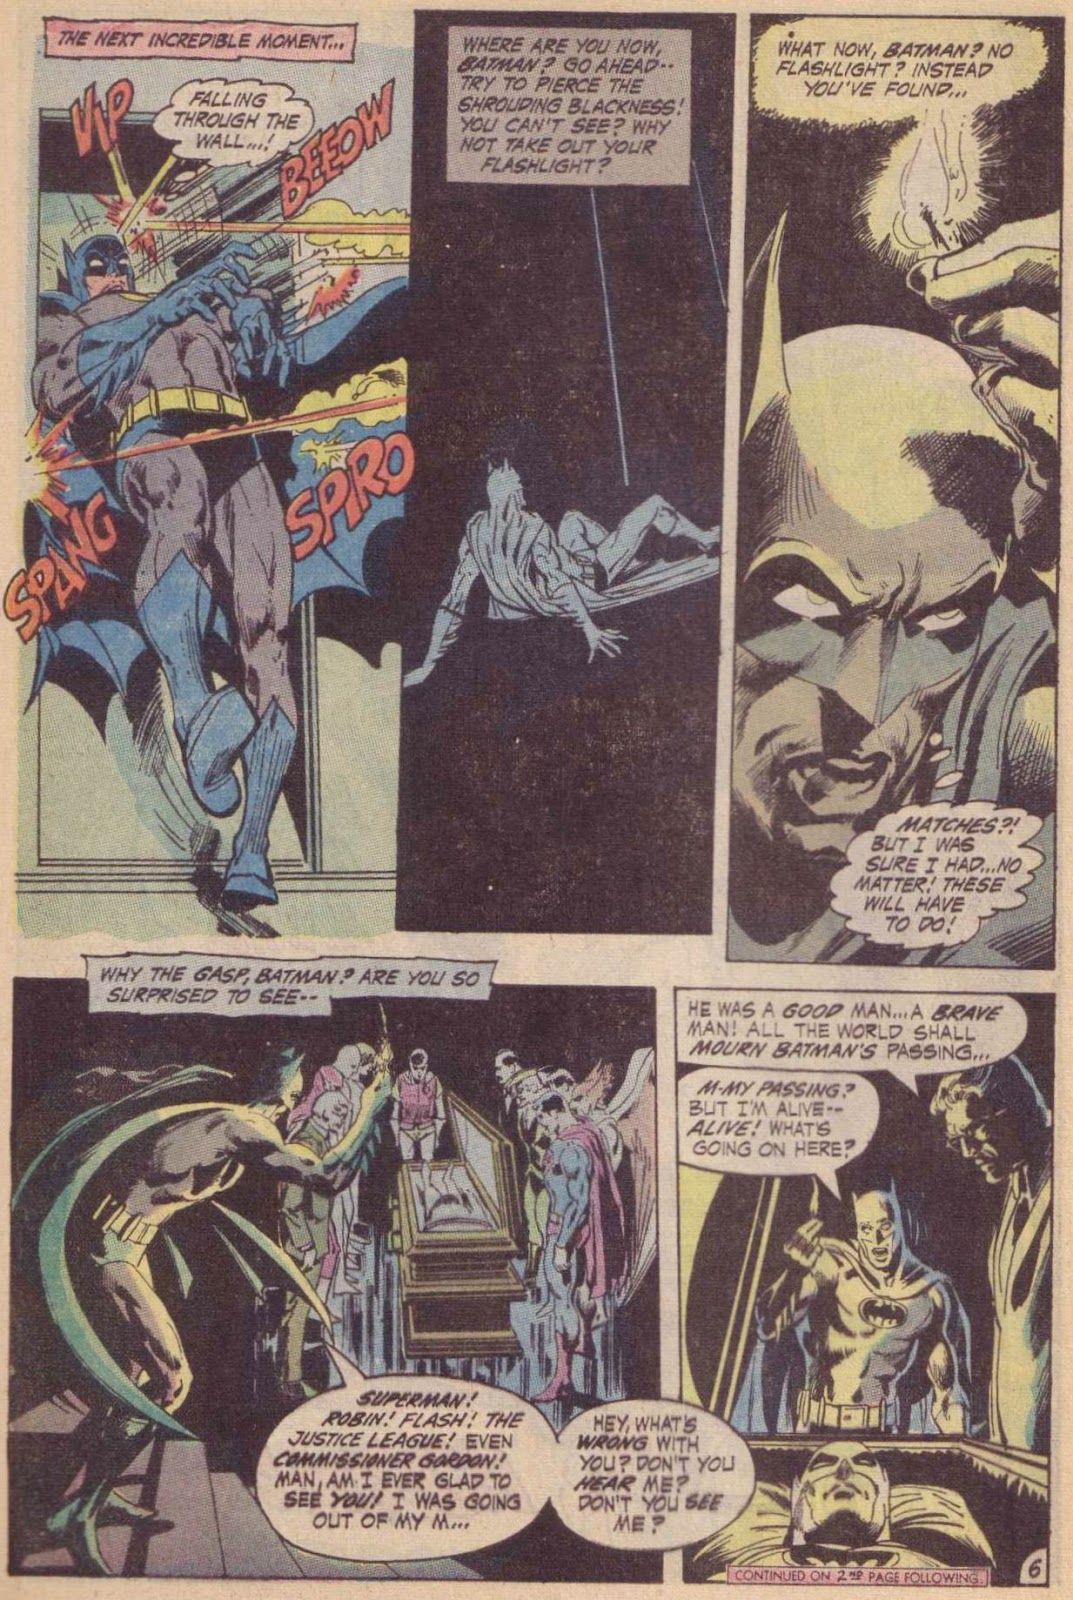 Когда Бэтмен и Супермен впервые признают JLA в своих комиксах